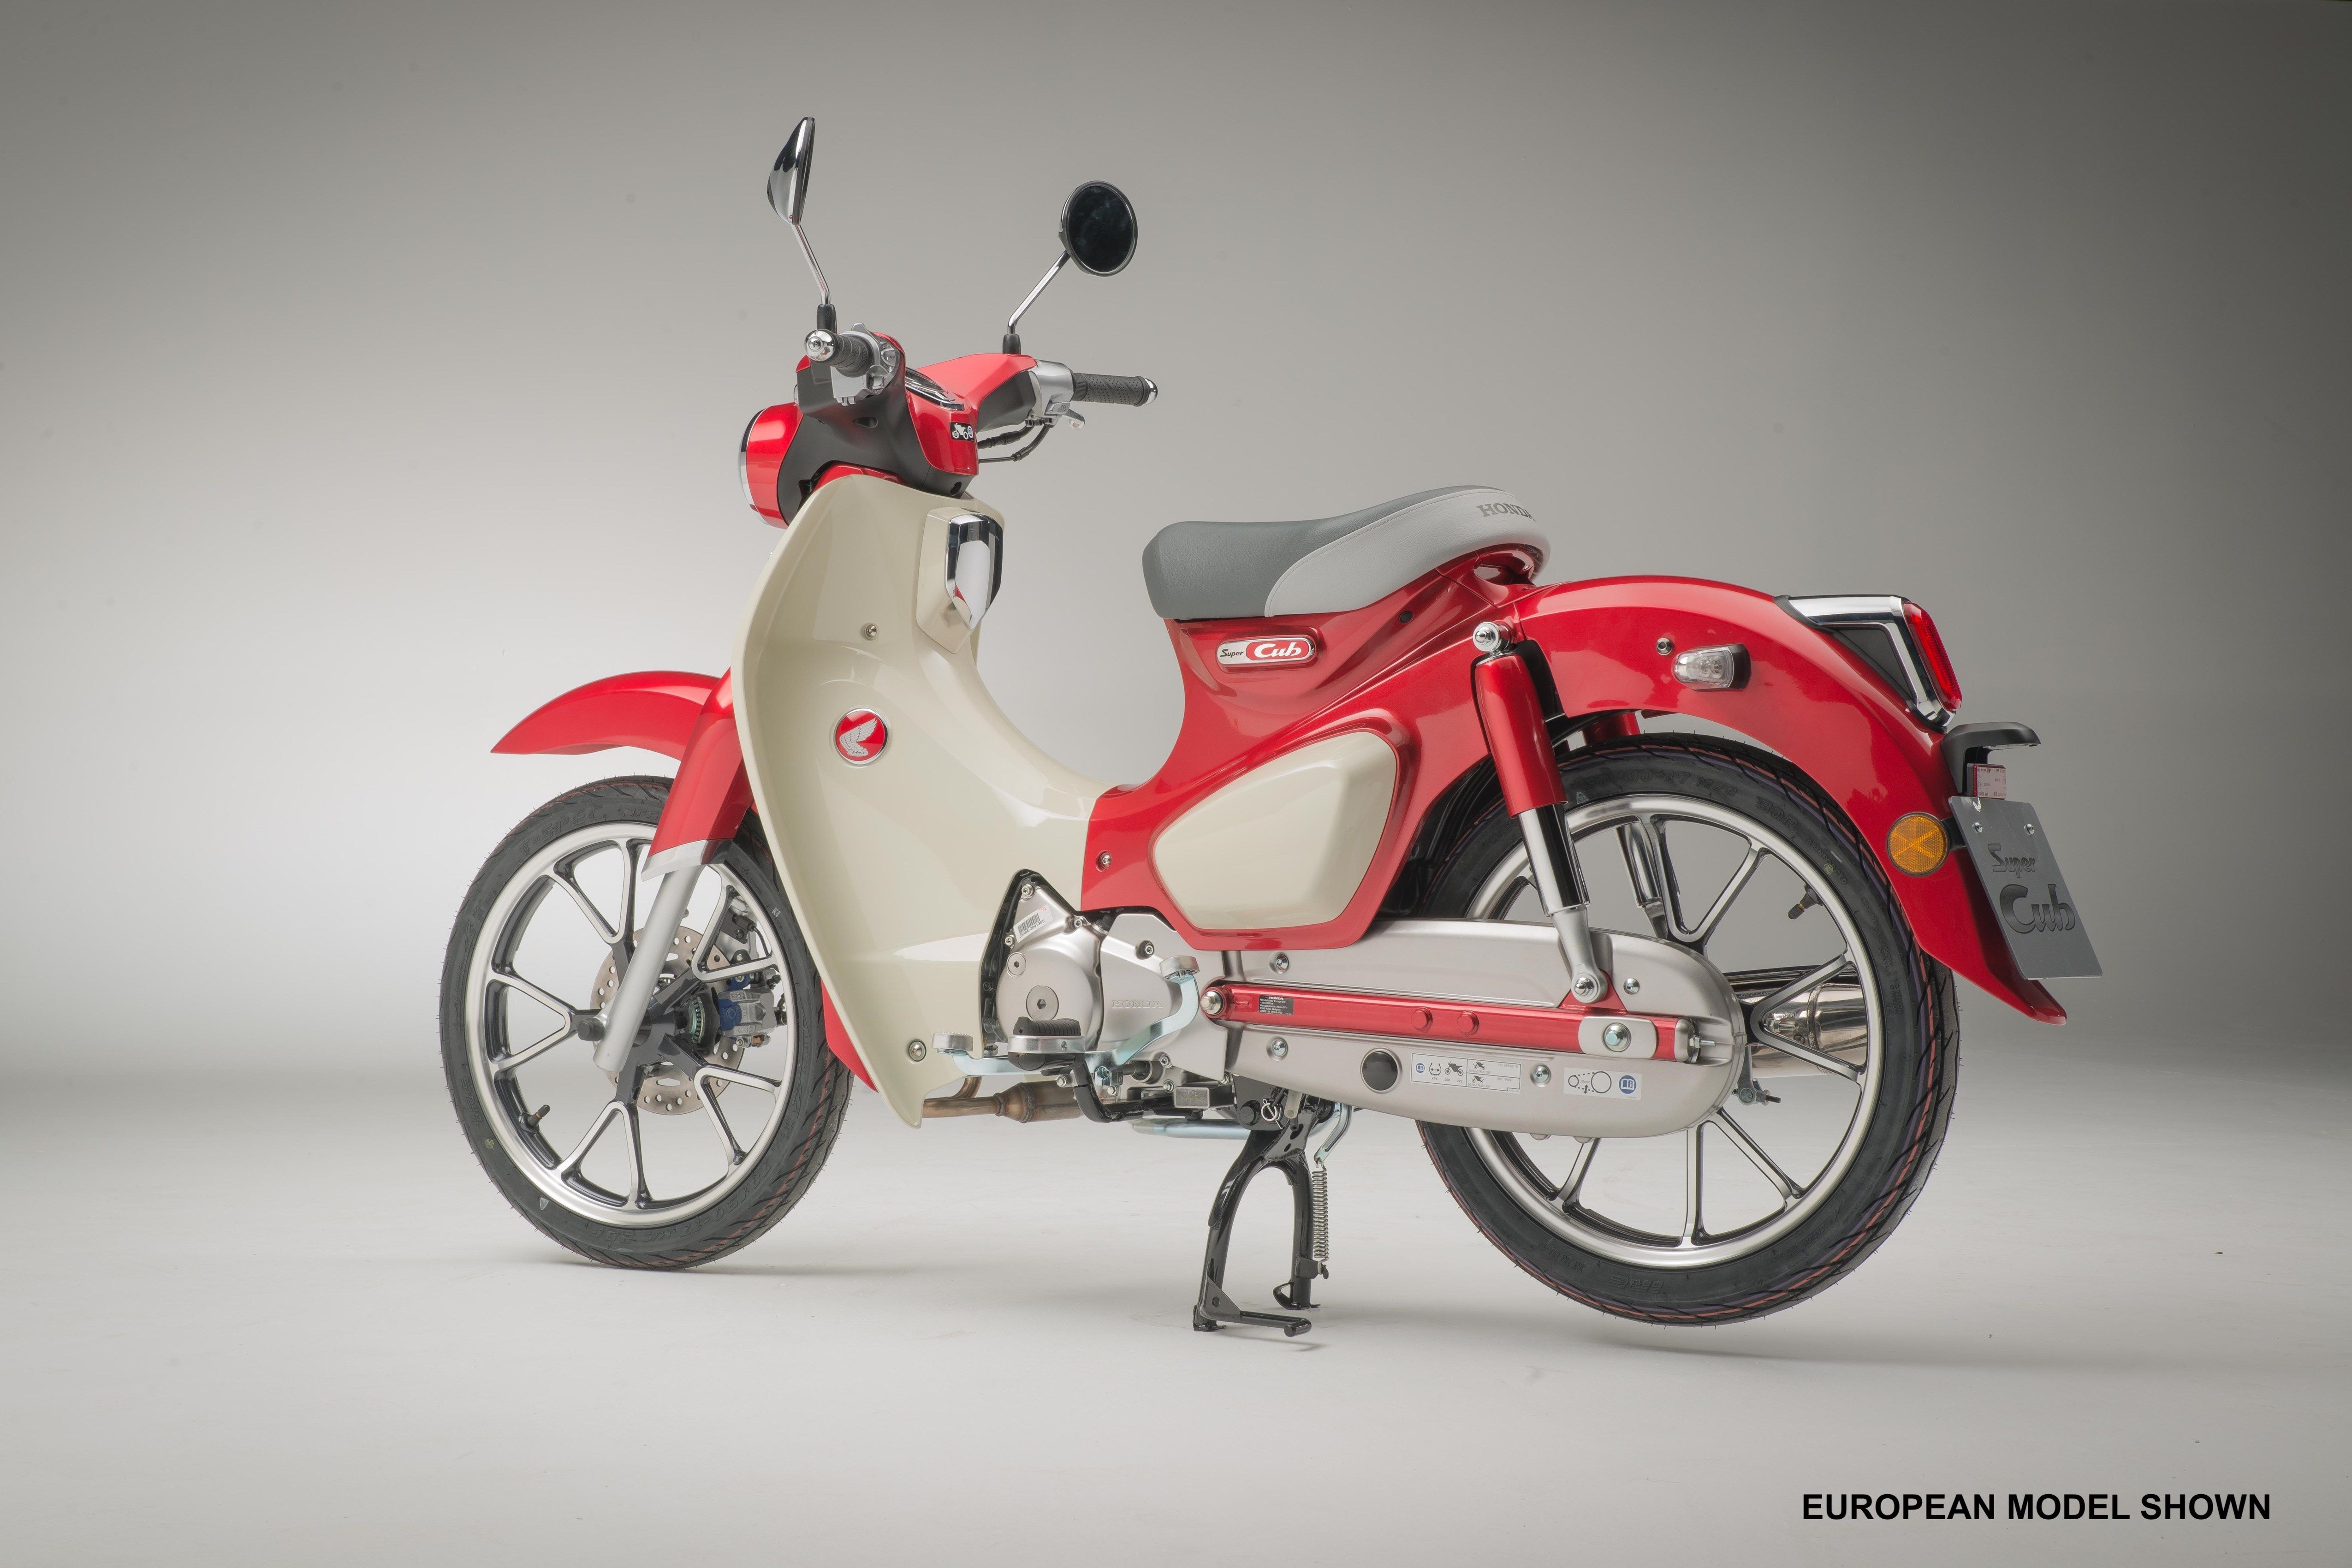 2019 - 2020 Honda Super Cub C125